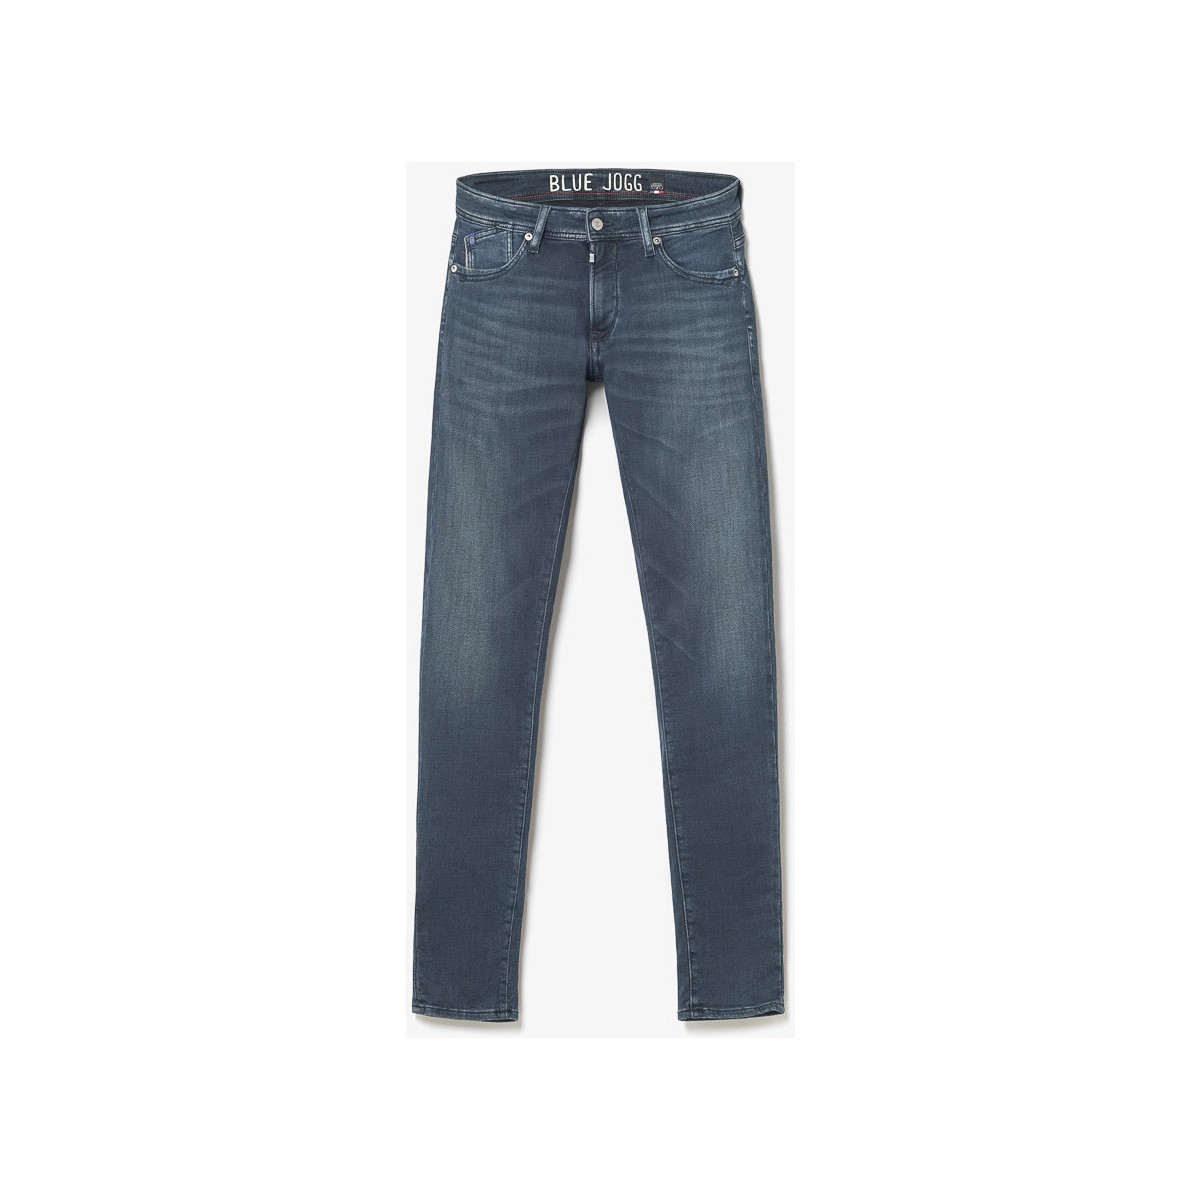 Le Temps des Cerises Bleu Jogg 700/11 adjusted jeans bleu-noir zkbbMBy4